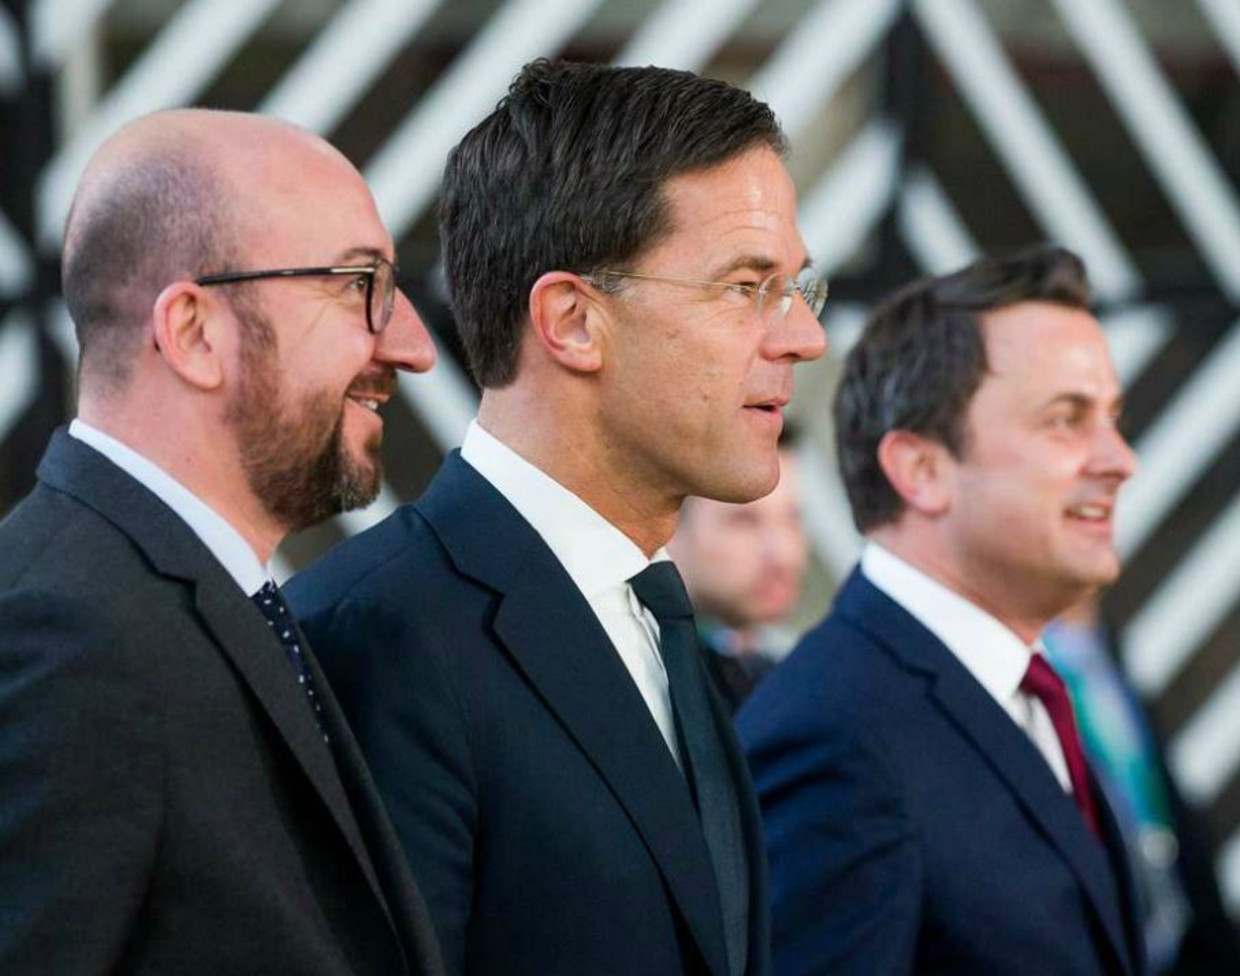 De premiers van de Benelux, Charles Michel, Mark Rutte en Xavier Bettel, bij aankomst op de EU-top. Beeld EPA